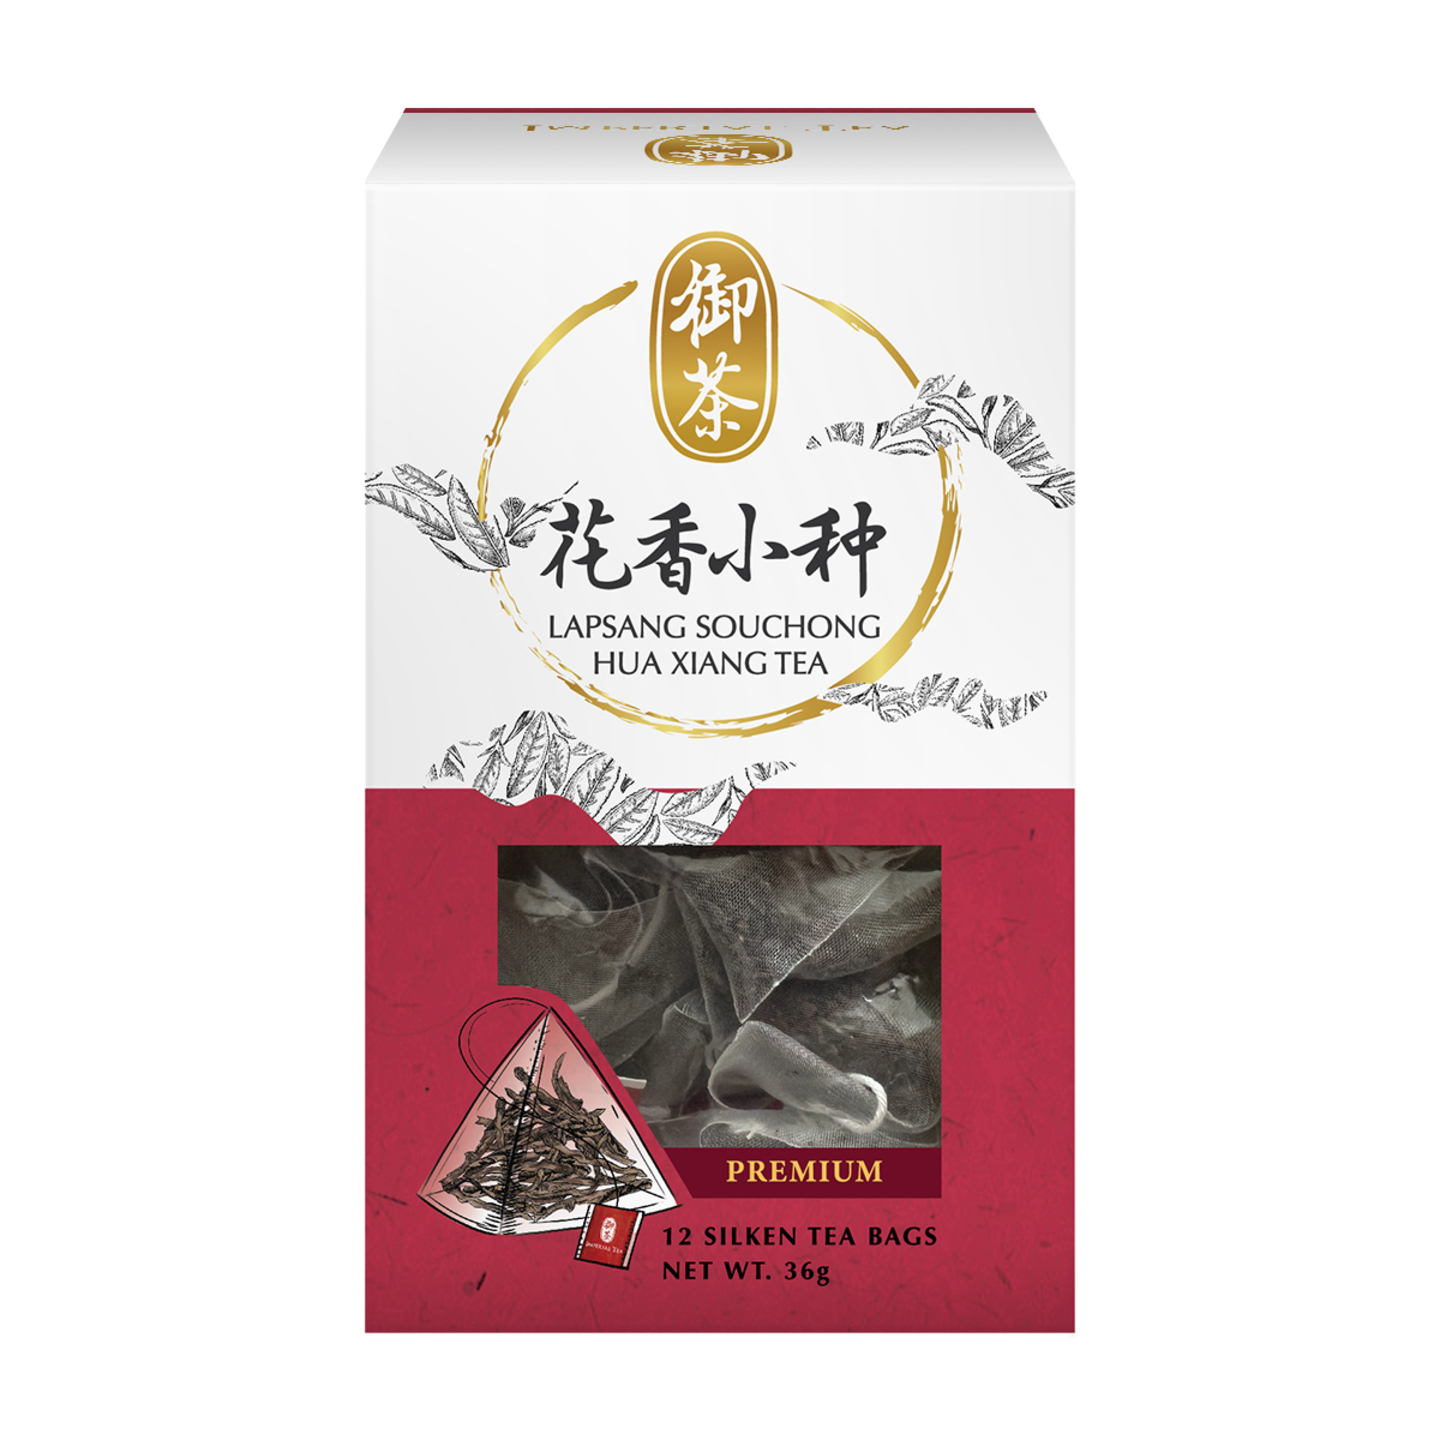 Lapsang Souchong Hua Xiang Tea, Caffeine free